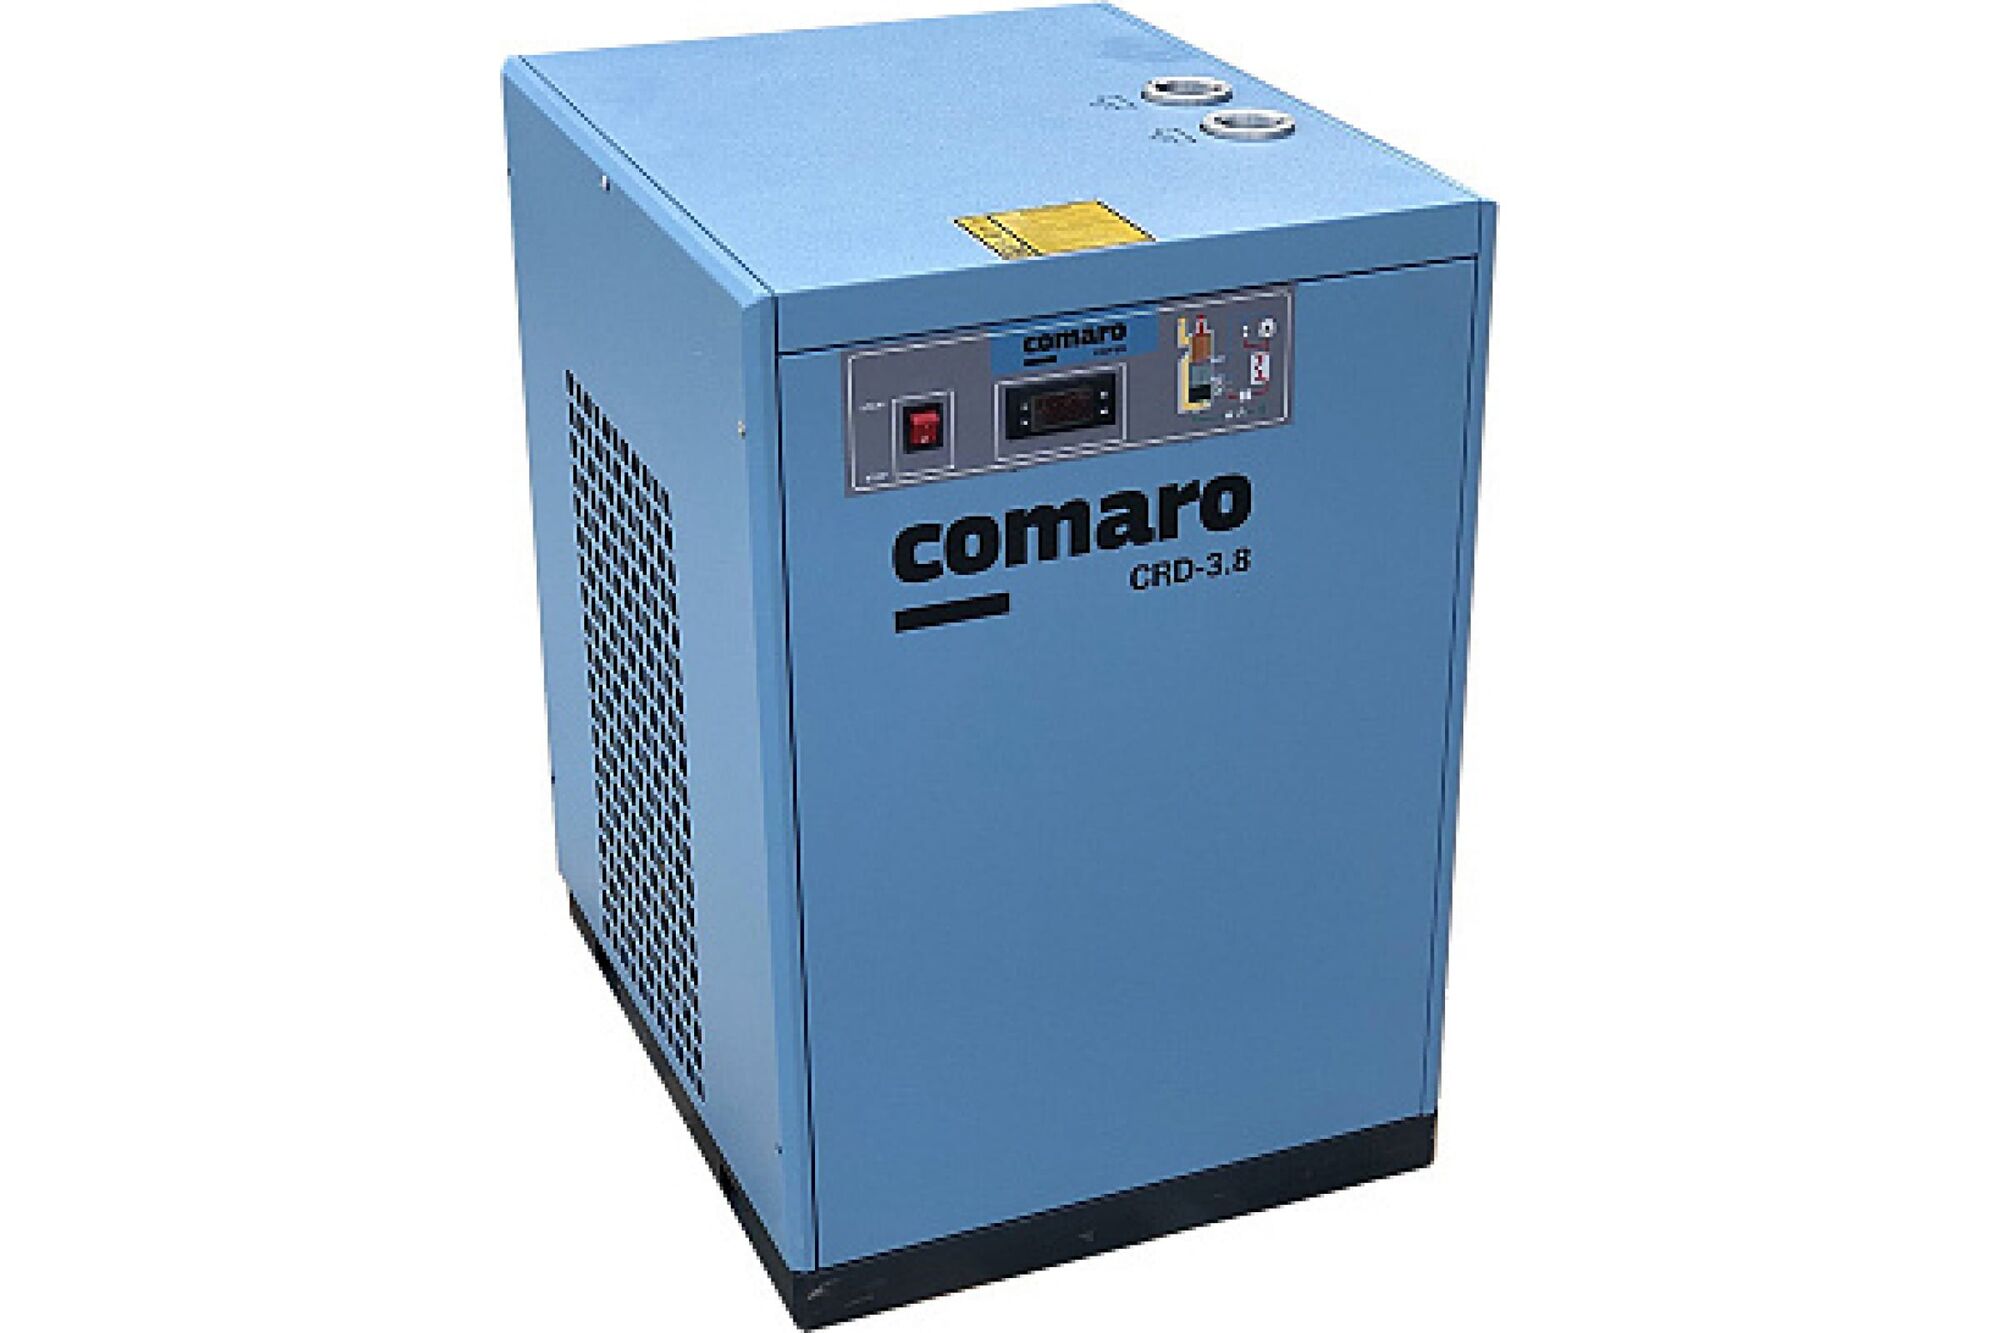 Рефрижераторный осушитель COMARO CRD-3.8 RD0038C